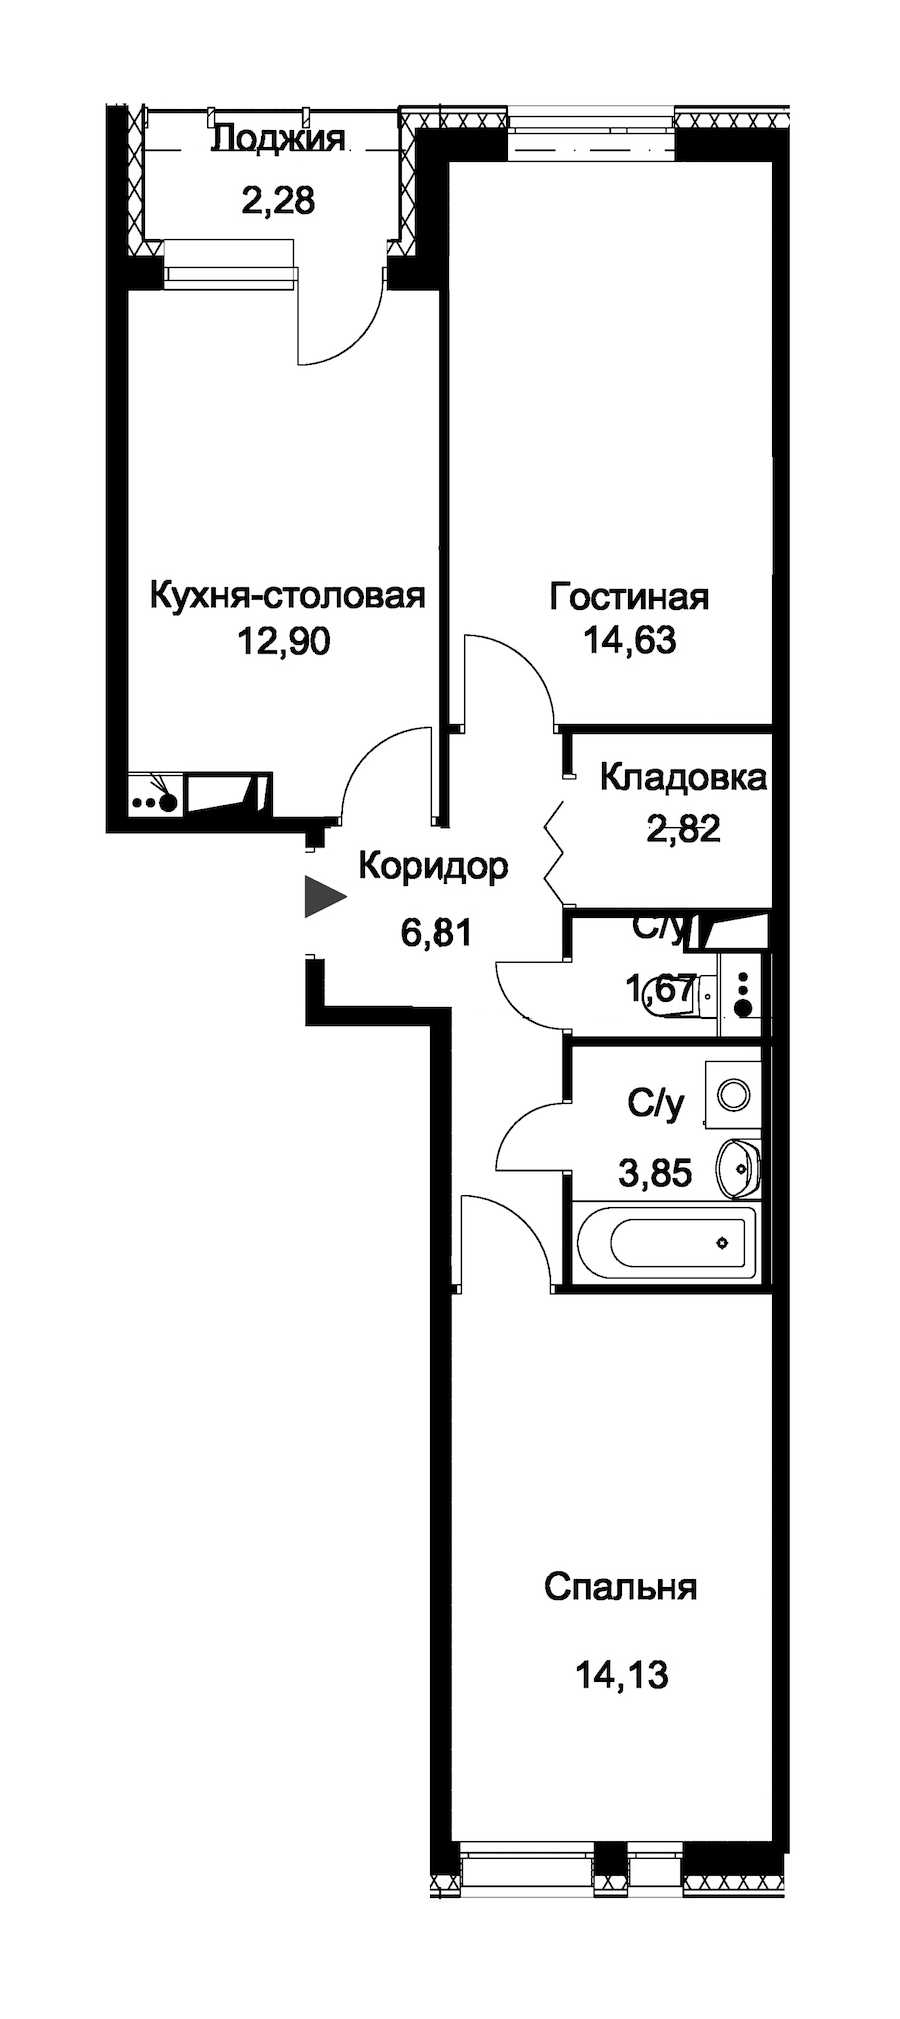 Двухкомнатная квартира в : площадь 57.95 м2 , этаж: 1 – купить в Санкт-Петербурге